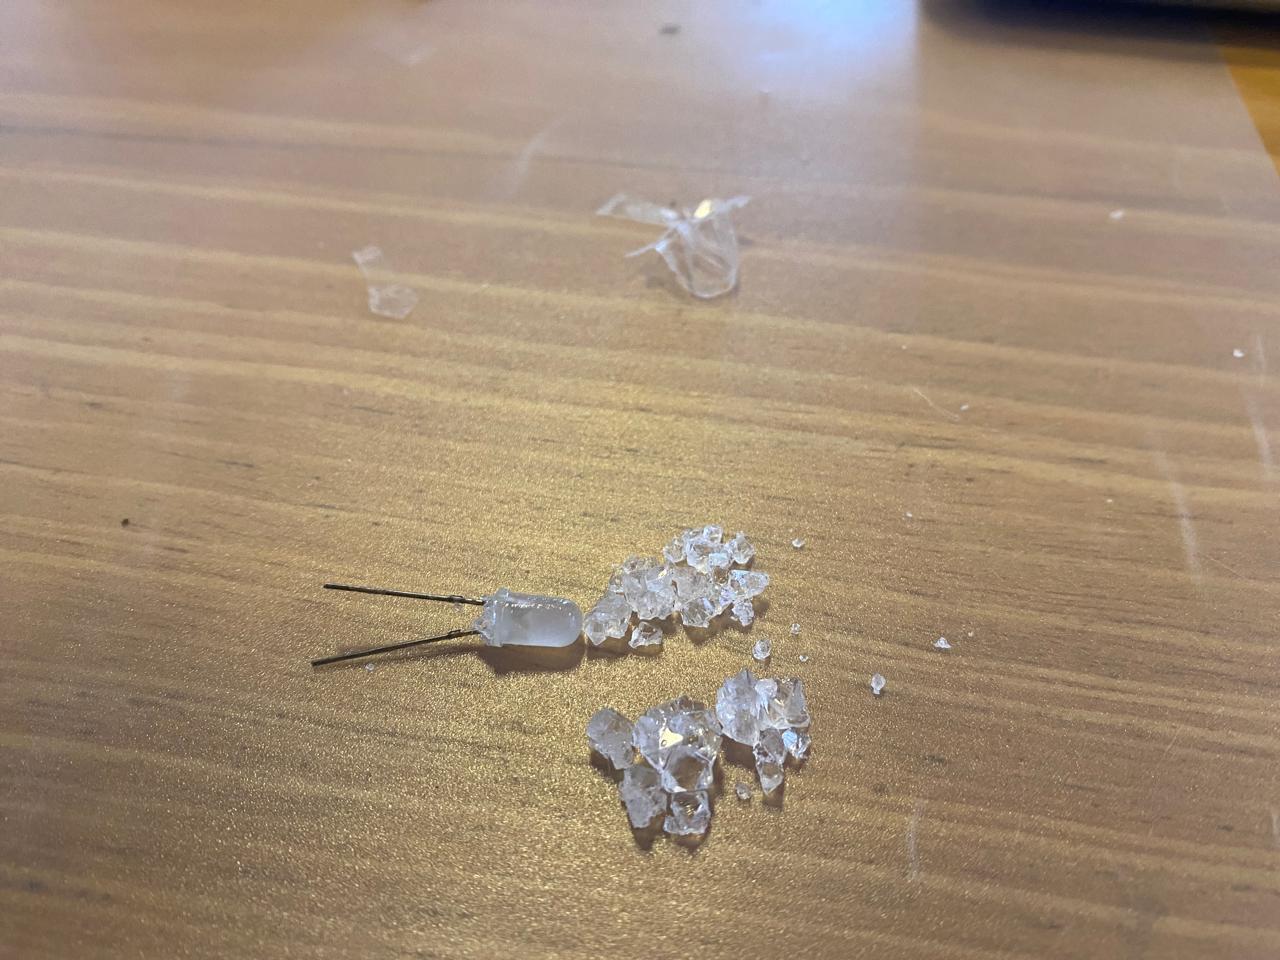 Broken christals